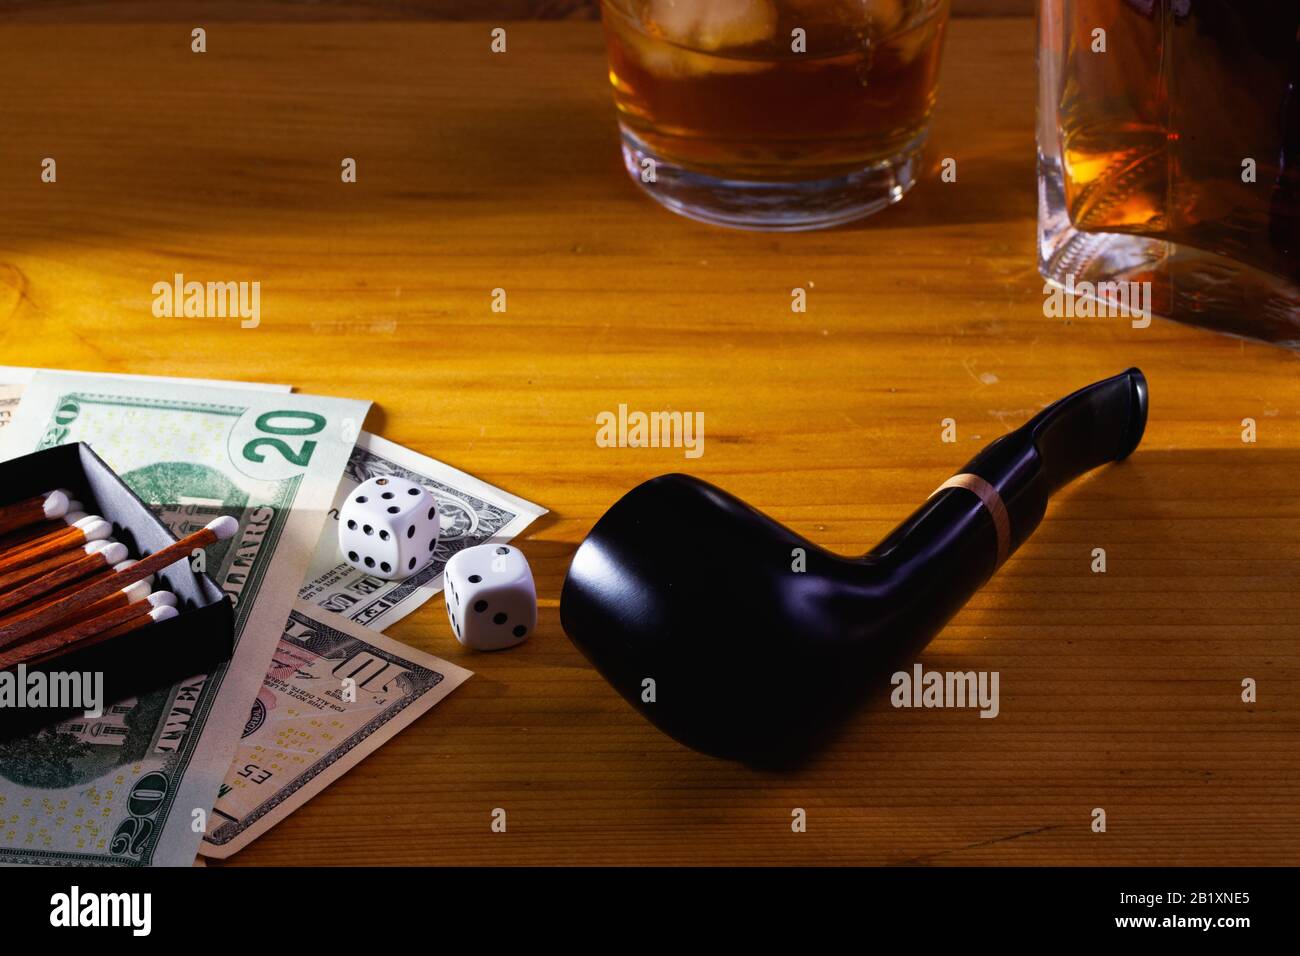 Jeux de hasard - tuyau de tabac, dés blancs, whisky écossais et billets de dollars sur la table en bois Banque D'Images